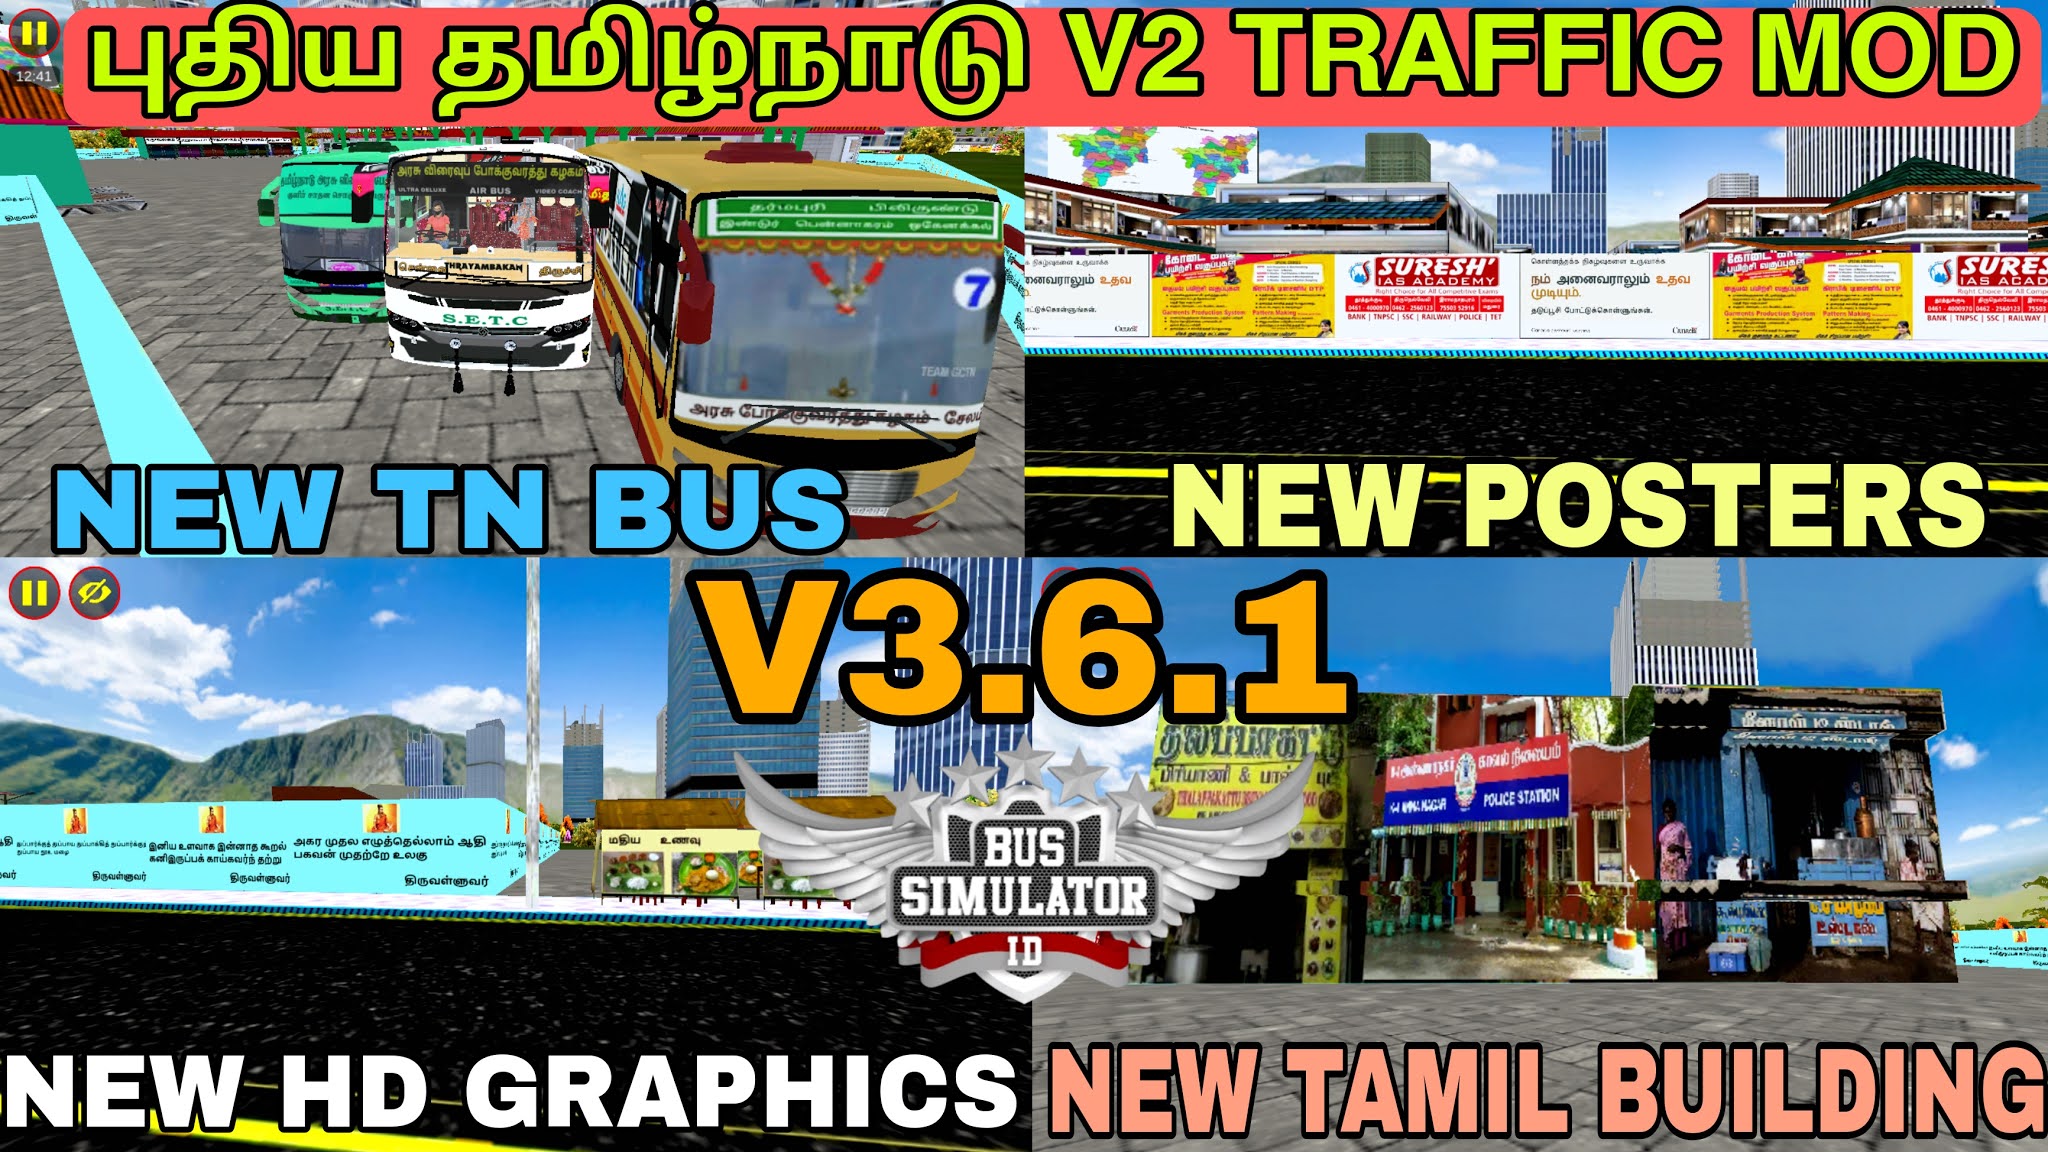 tamilnadu v2 traffic mod v3.6.1 bussid